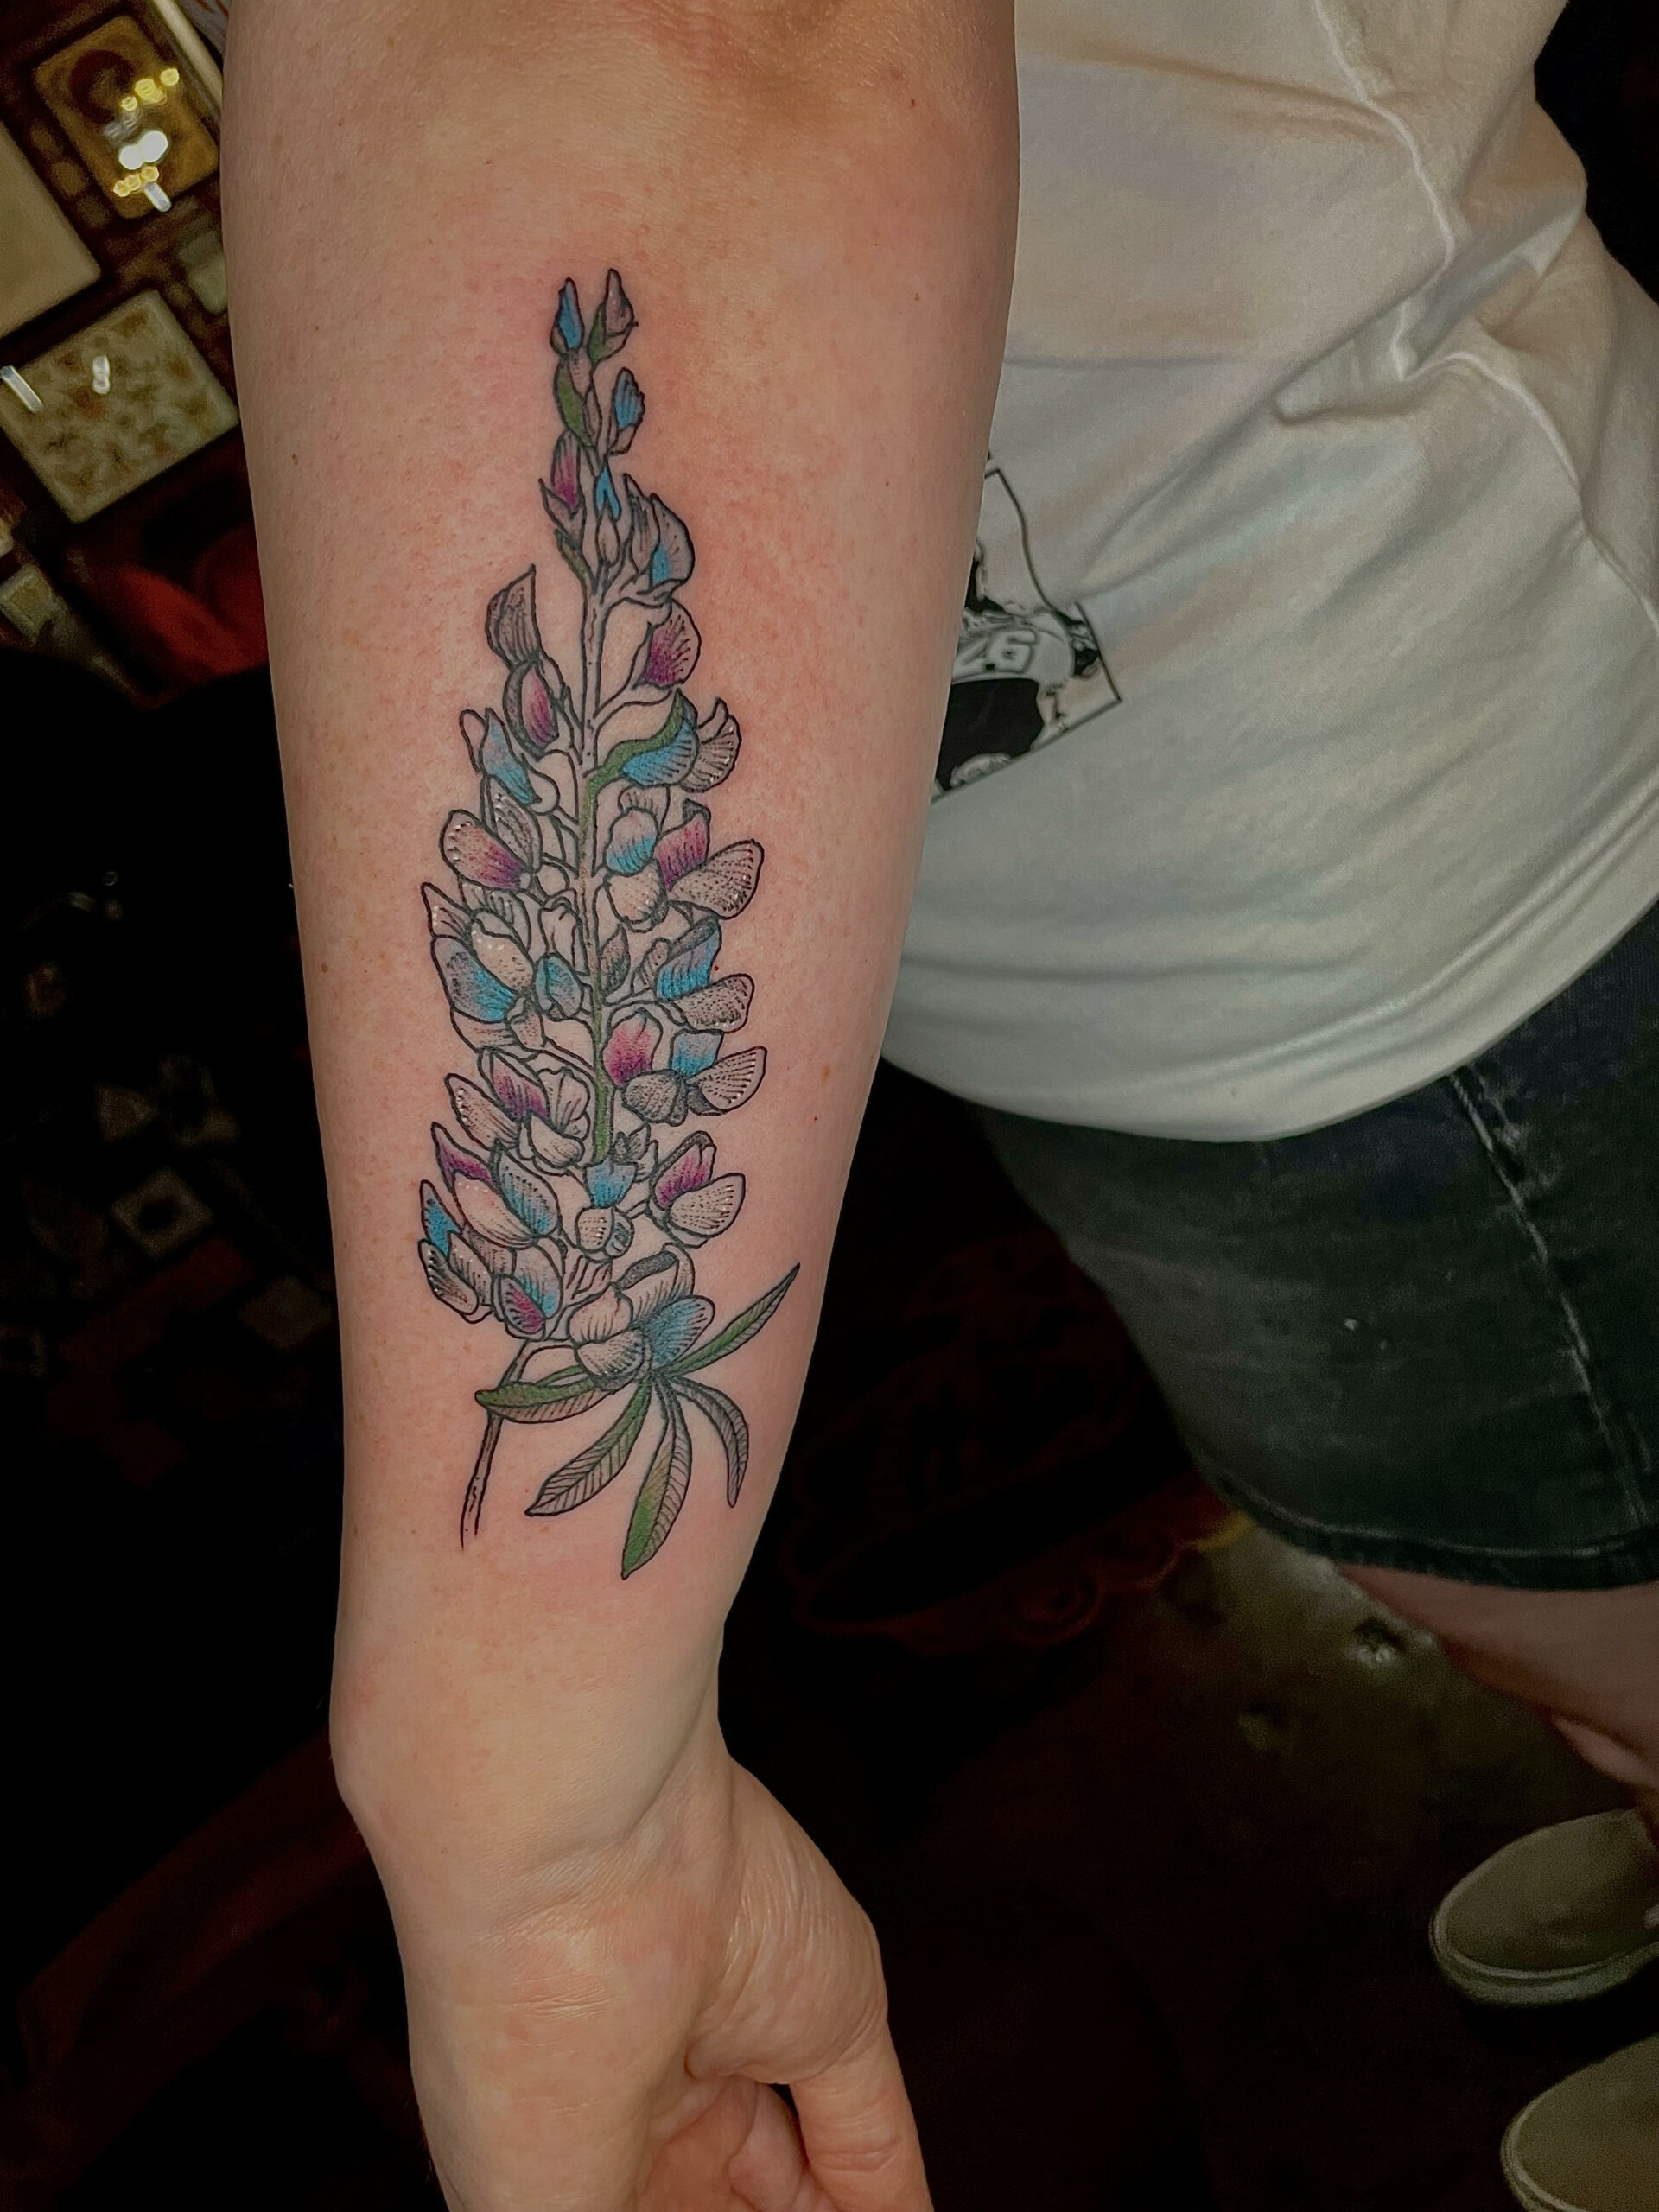 Tattoo Artist creating new tattoos in Dallas